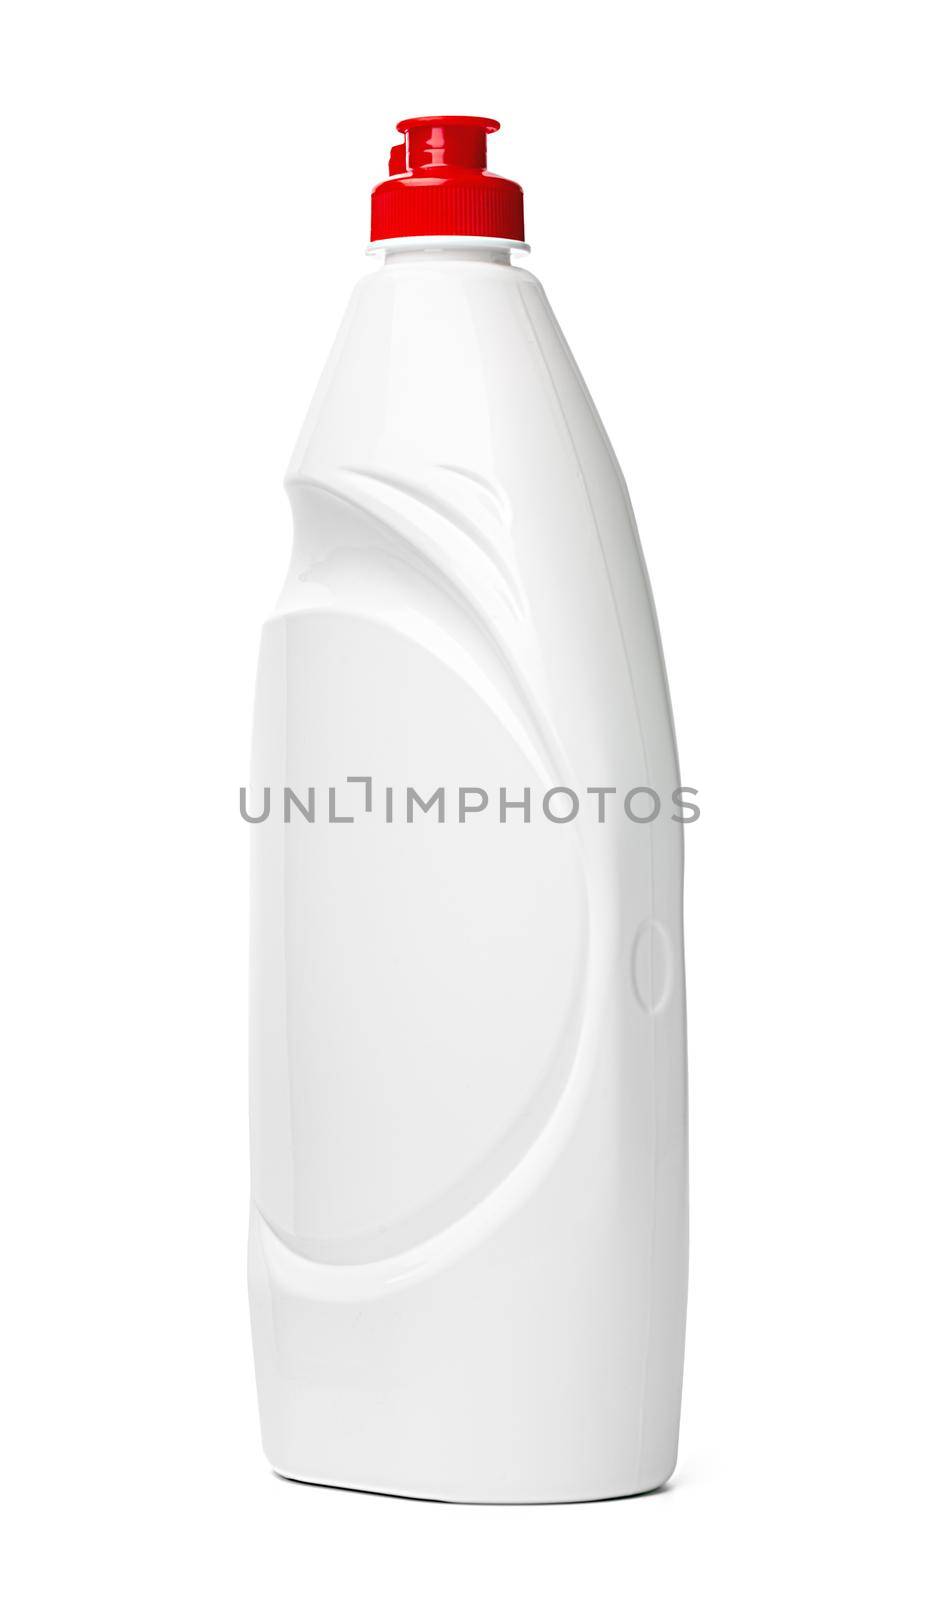 White plastic bottle of washing liquid isolated on white background by Fabrikasimf